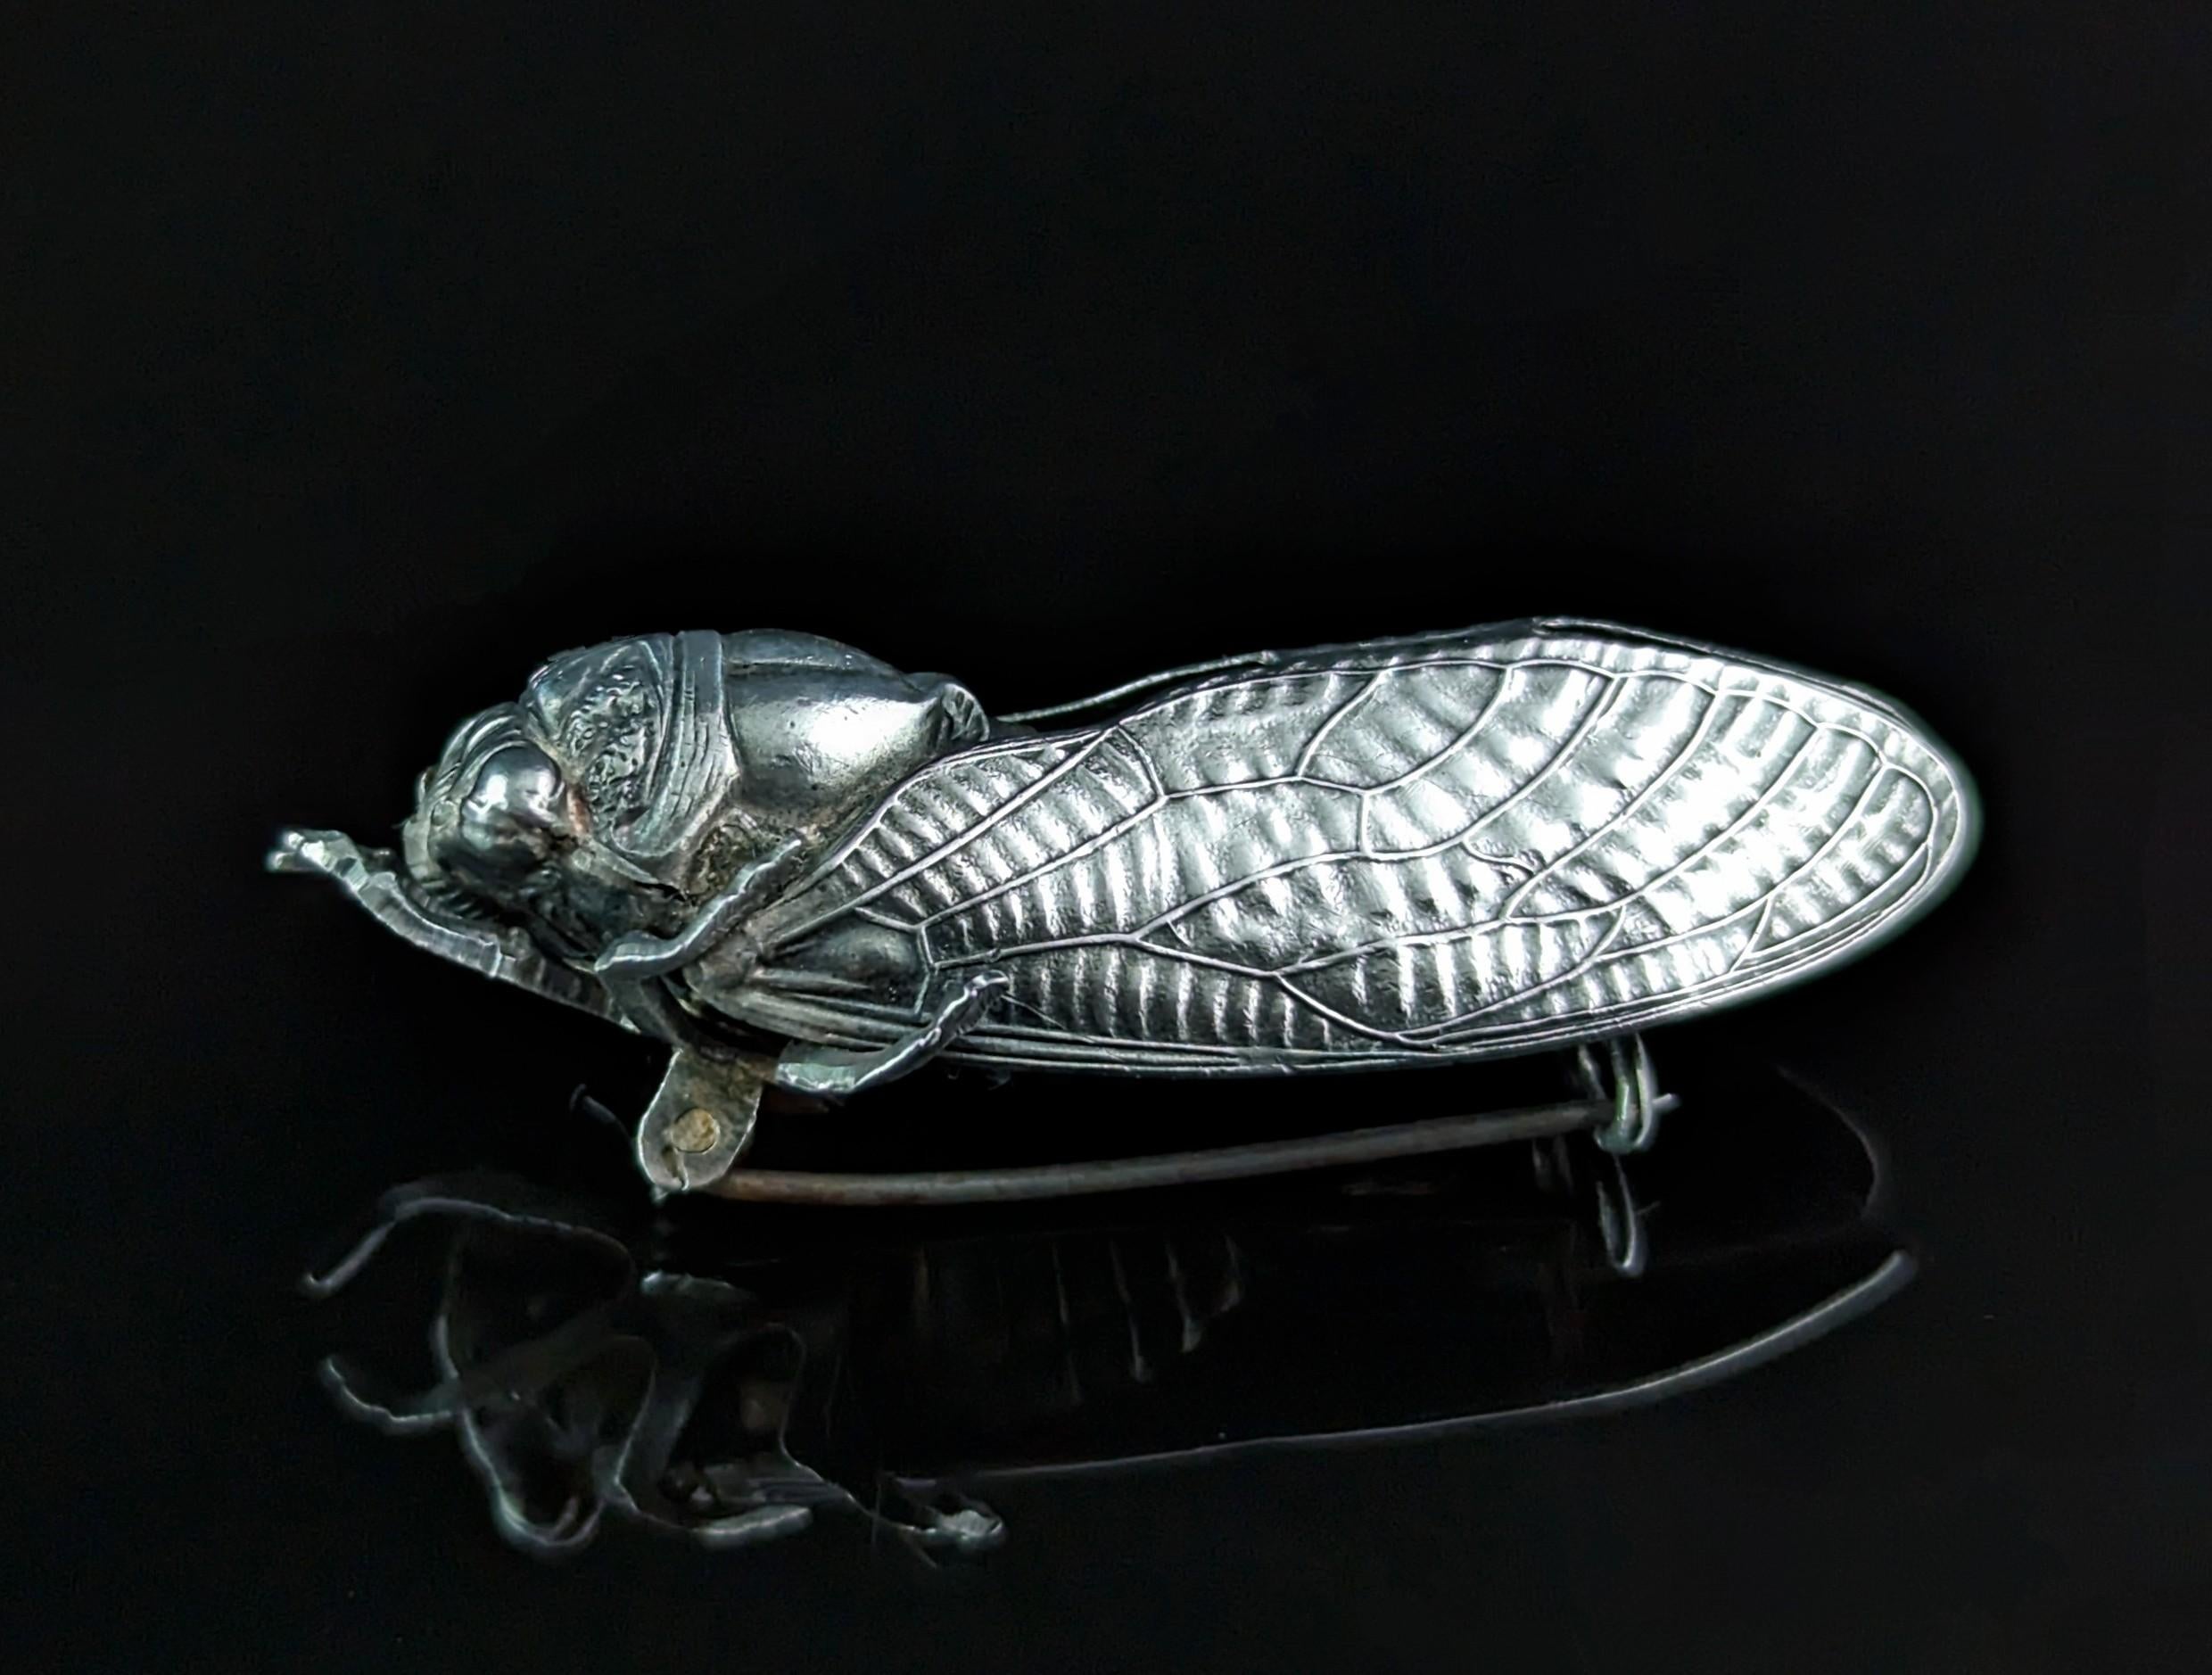 Eine sehr gut detaillierte und umfangreiche antike französische Silber Cicada Brosche.

Es gibt so viele feine Details auf diesem Stück und mit, dass und die Genauigkeit in der Größe hat es ein sehr lebensechtes Gefühl zu ihm.

Die Cicada hat eine